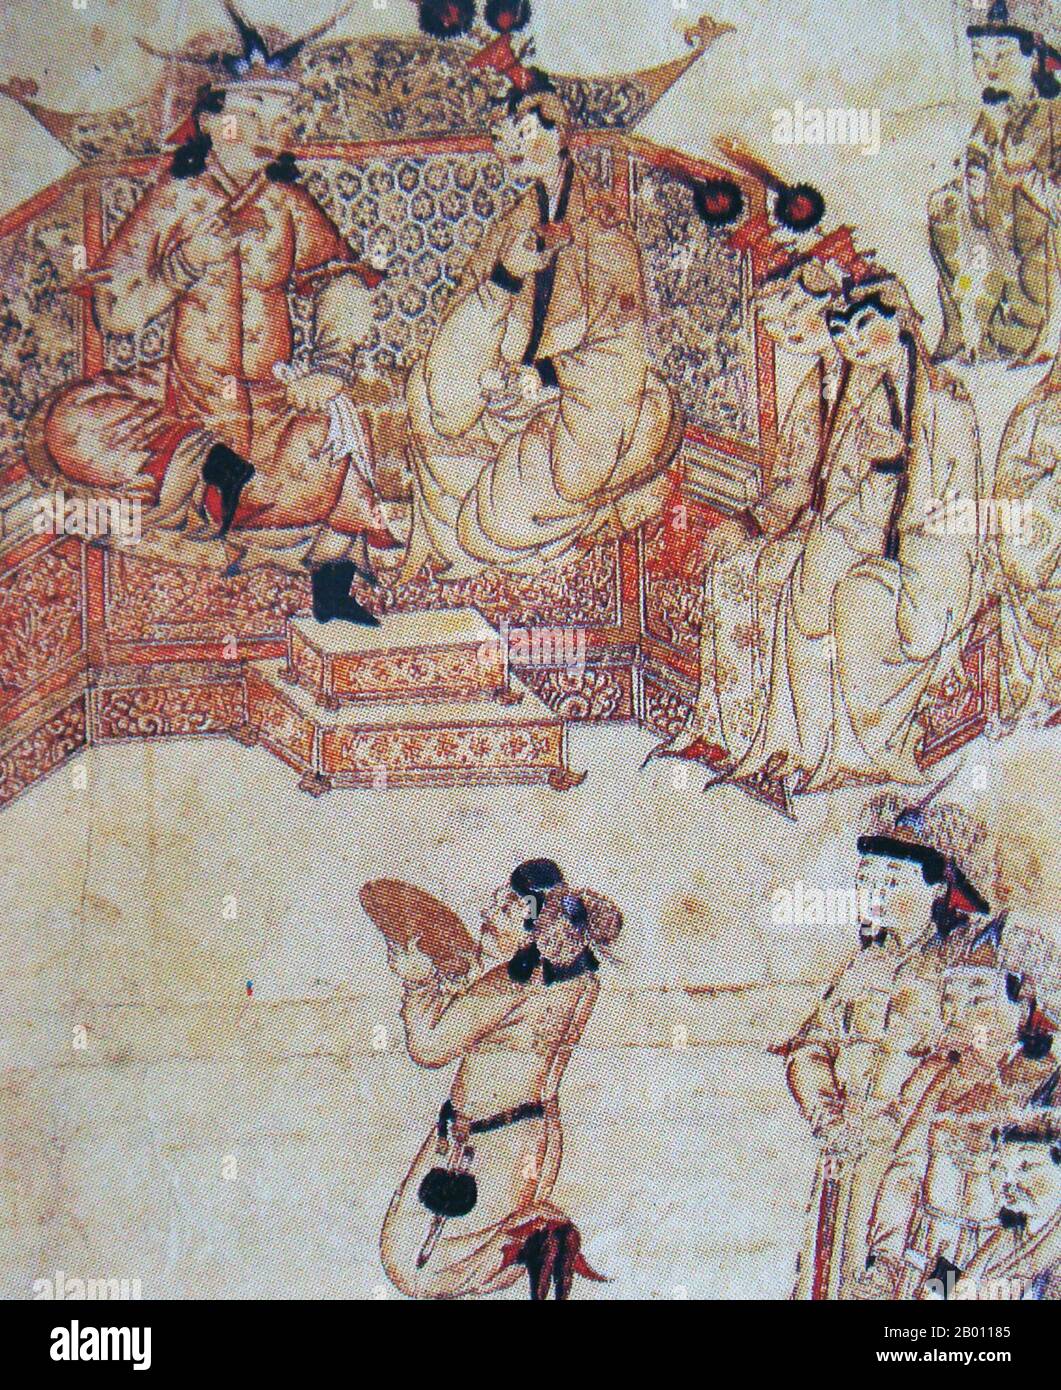 Iran/Mongolei: Ghazan Khan (r.1295-1304) mit seiner Frau Kokochin (Kokachin) vor Gericht, 13. Jahrhundert. Kokachin war eine mongolische Prinzessin aus dem 13. Jahrhundert aus der Yuan-Dynastie in China, die zum Stamm der mongolischen Bayaut gehörte. Im Jahr 1291 wurde sie vom mongolischen Großkhan Kublai mit dem Ilkhanate khan Arghun verlobt. Dies folgte einem Antrag von Arghun an seinen Großonkel Kublai, ihm einen Verwandten seiner toten Frau zu schicken, und Kublai wählte den 17-jährigen Kökötchin, der Marco Polo anvertraute, sie als seine letzte Pflicht zu begleiten. Arghun starb jedoch, bevor sie 1293 in Persien ankam, und so heiratete sie seinen Sohn Ghazan. Stockfoto